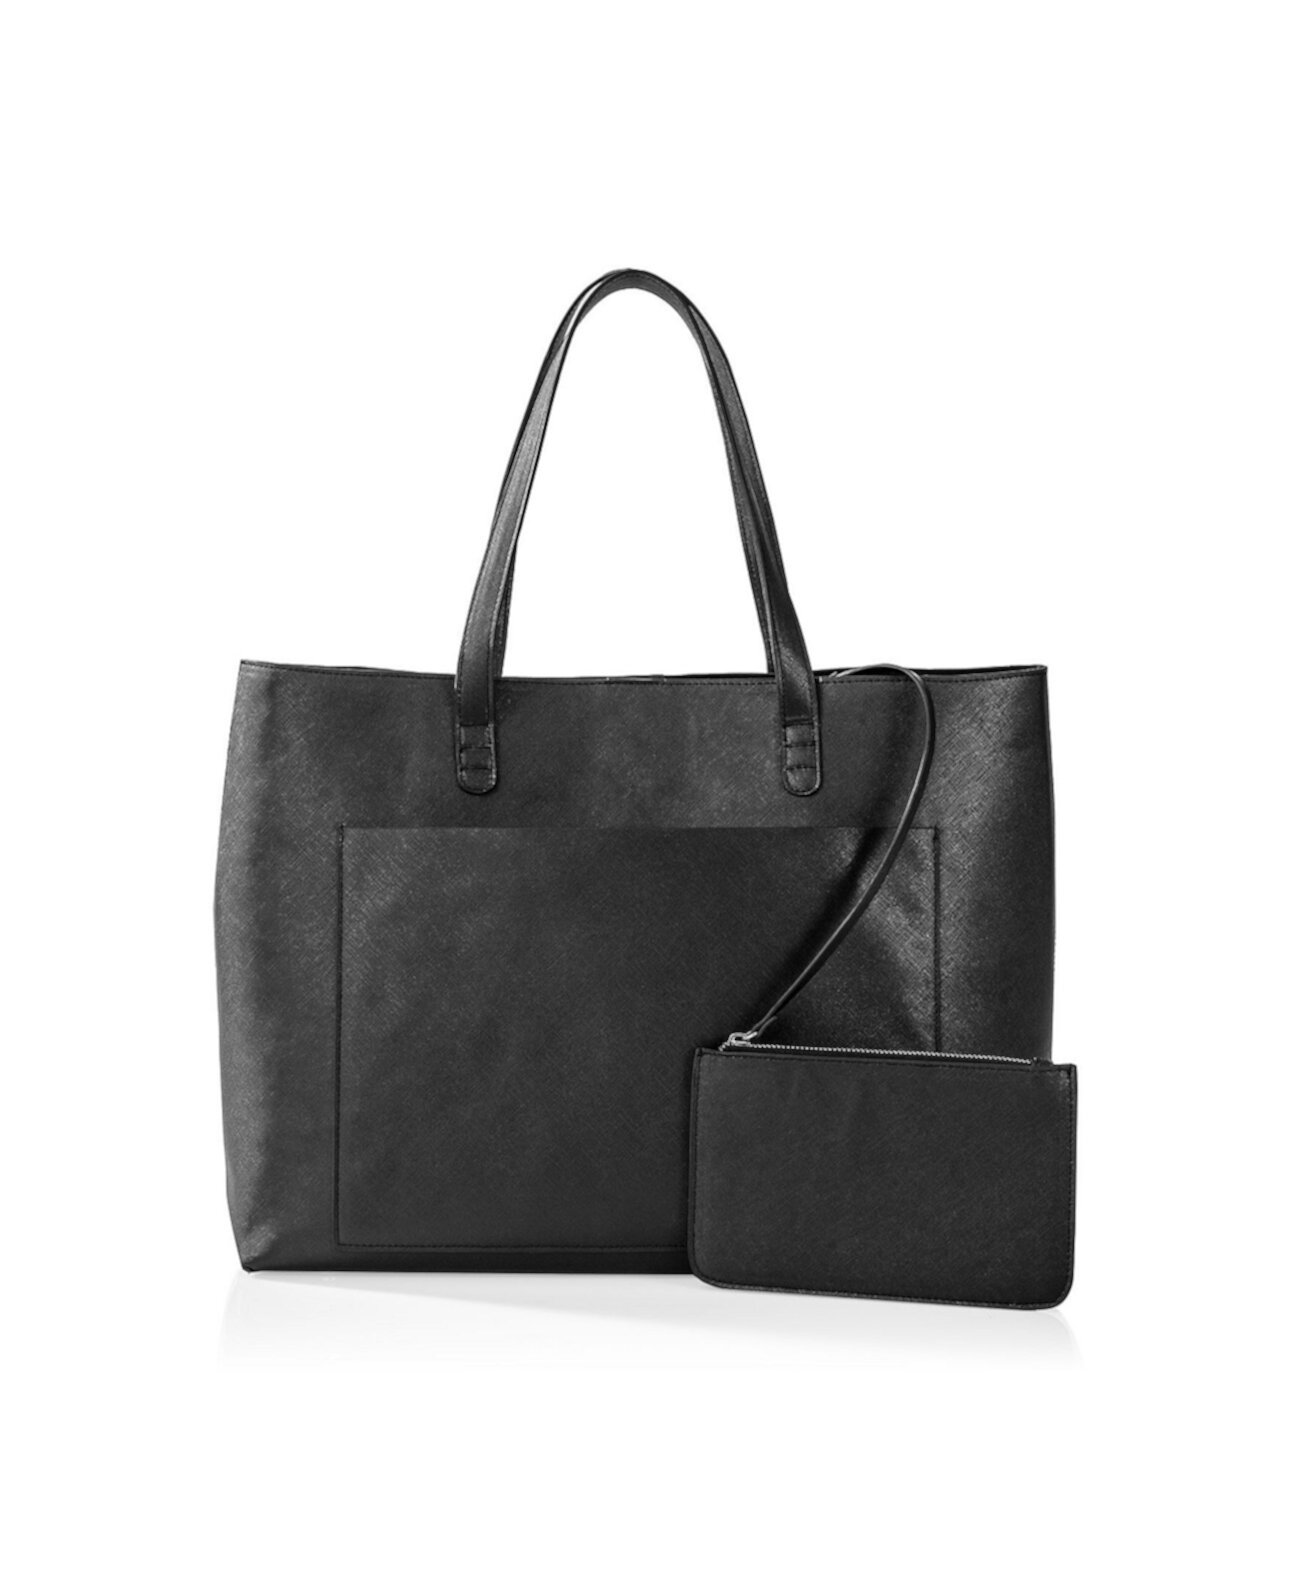 Набор сумок и клатча из веганской сафьяновой кожи Cathy's Concepts